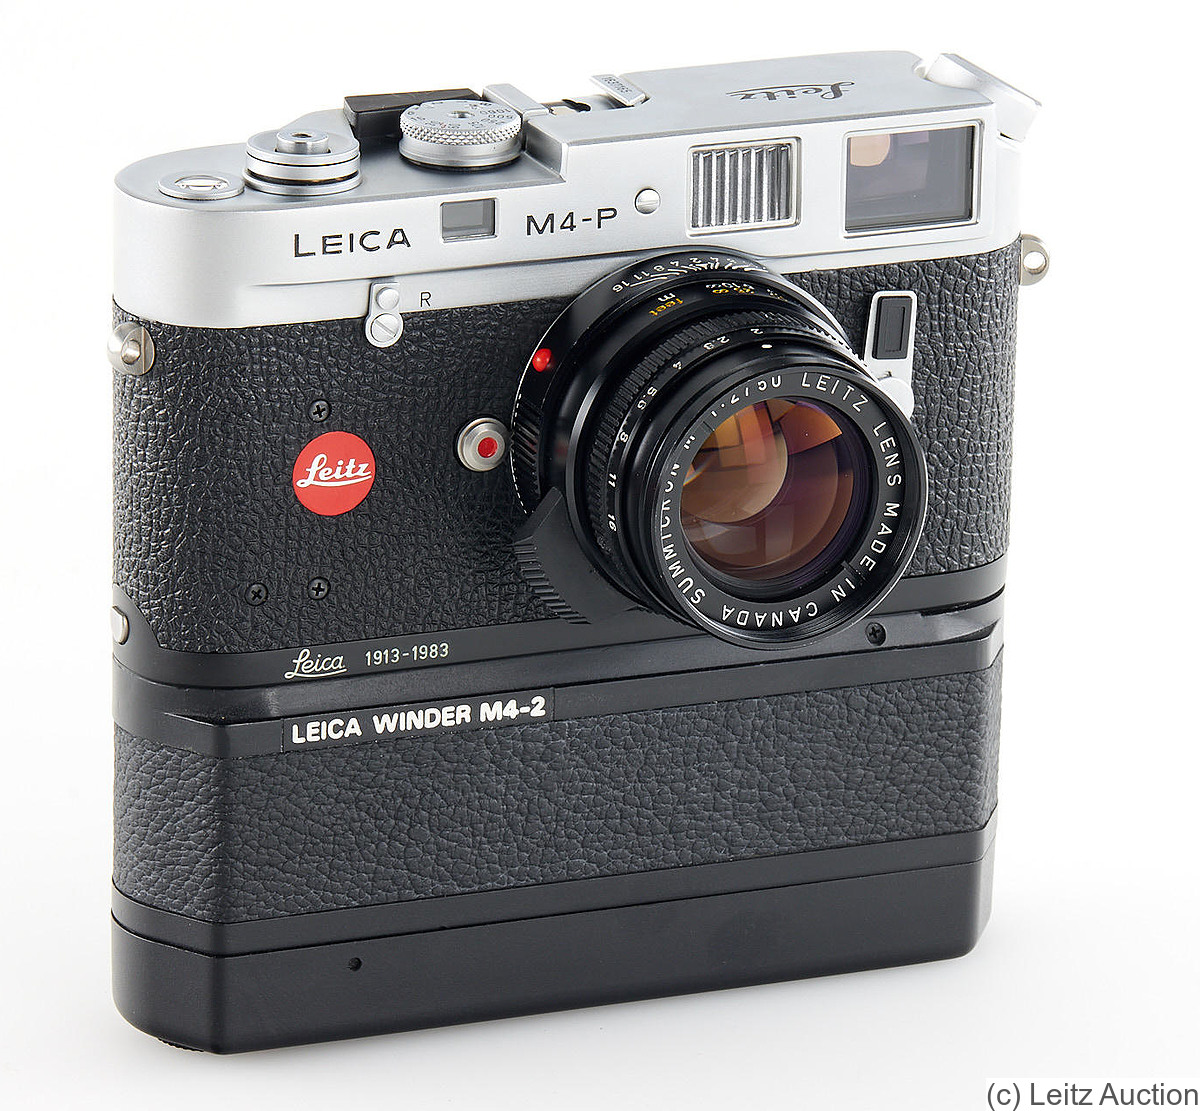 Leitz: Leica M4-P M4-2 winder camera